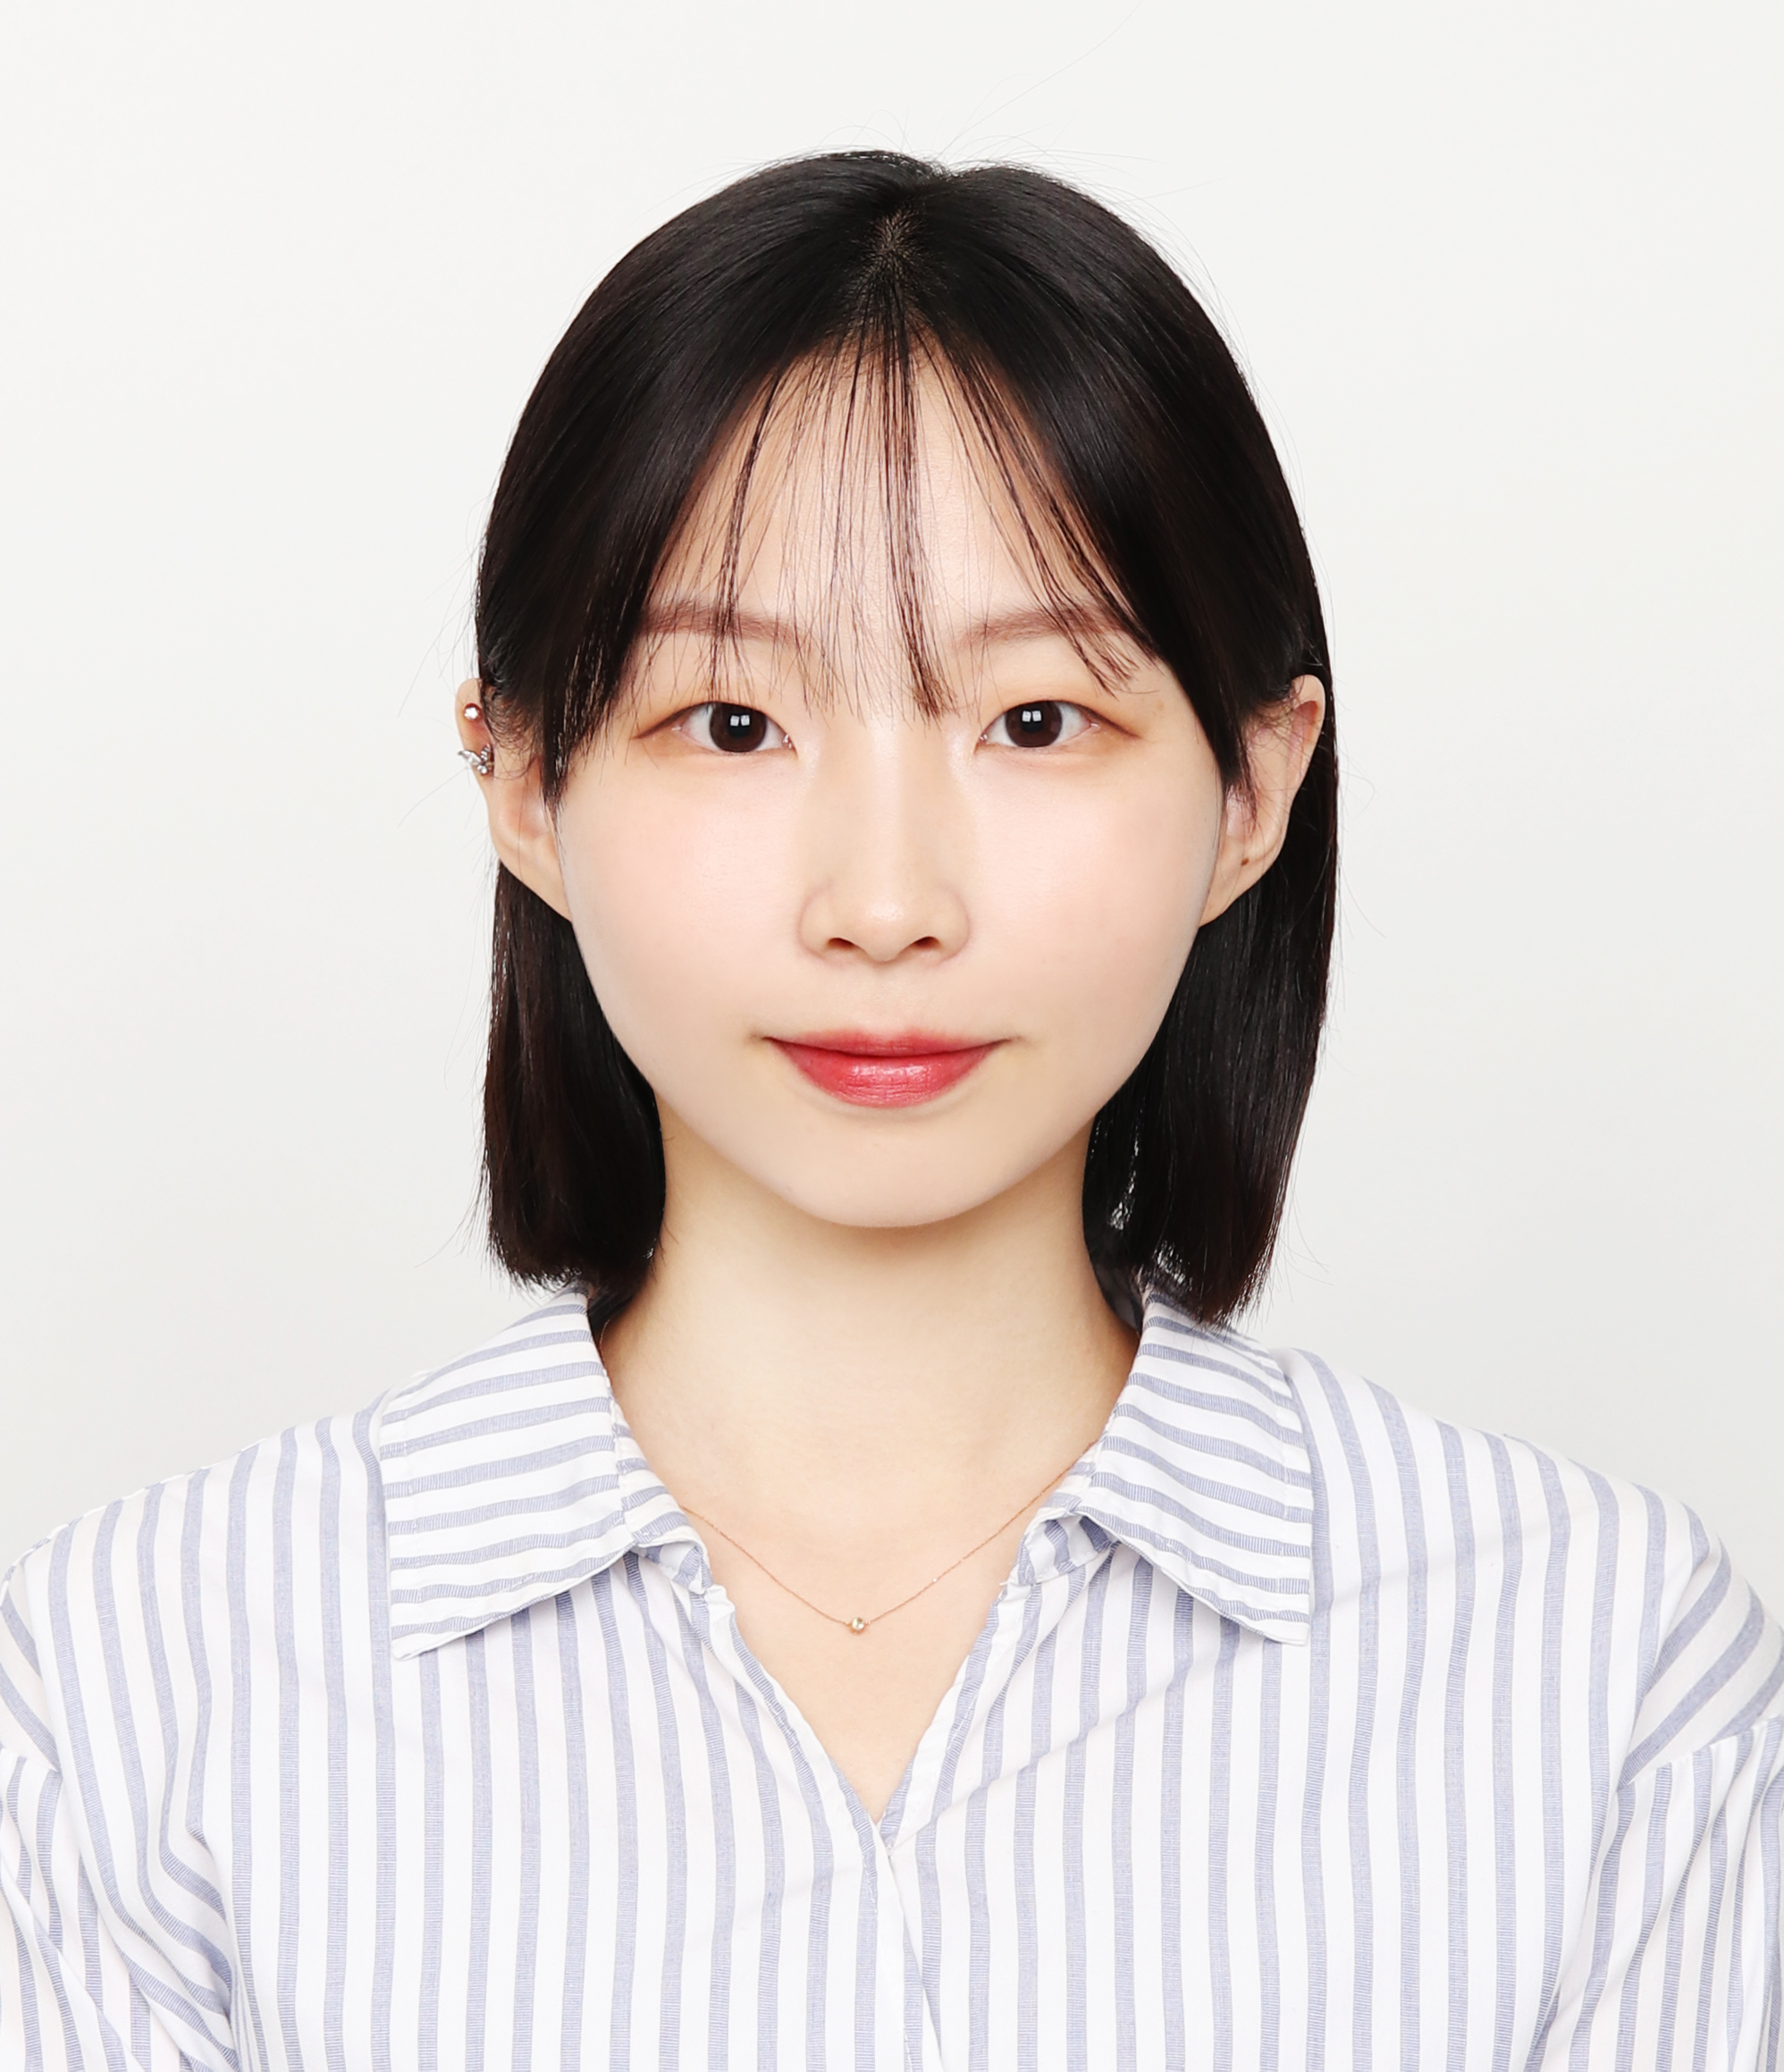 김정현 학생(문화미디어전공 20학번):  Accenture Japan 마케팅팀 취업 인터뷰